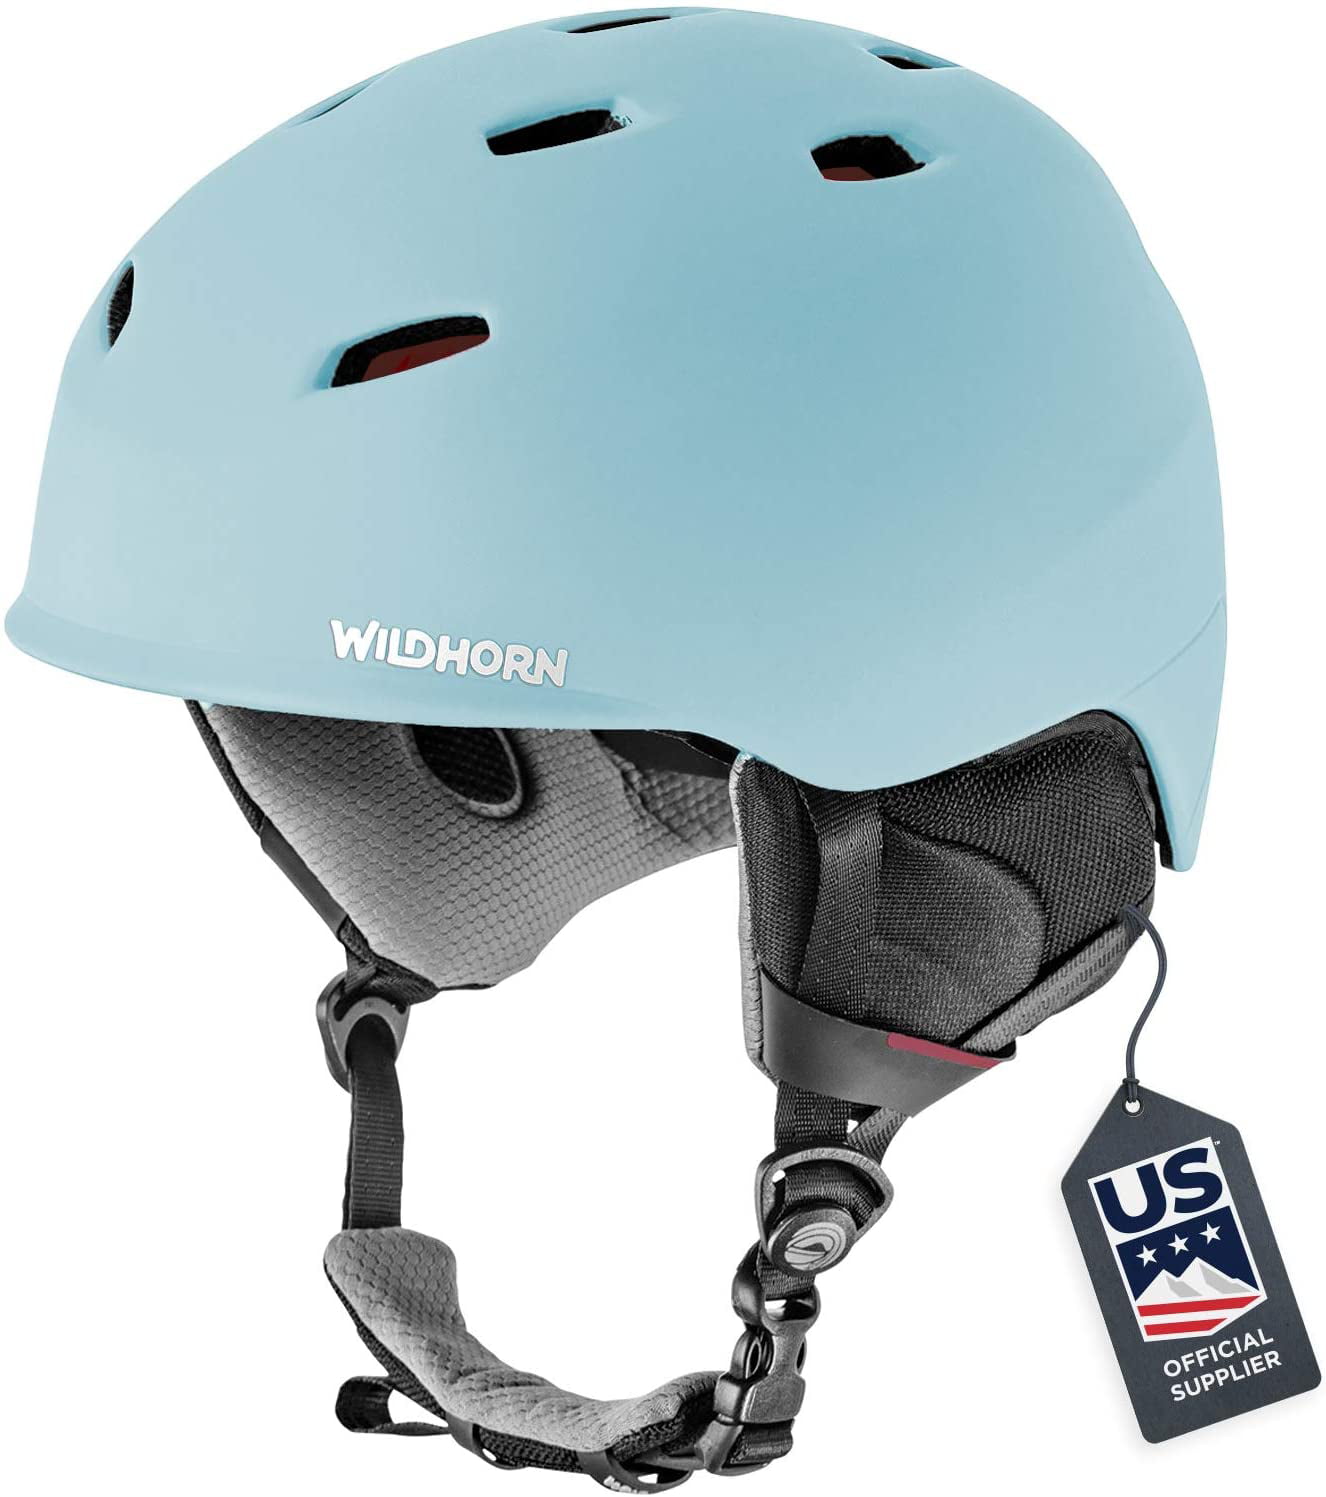 Wildhorn Drift Snowboard & Ski Helmet US Ski Team Official Supplier Performance & Safety w/Active Ventilation 